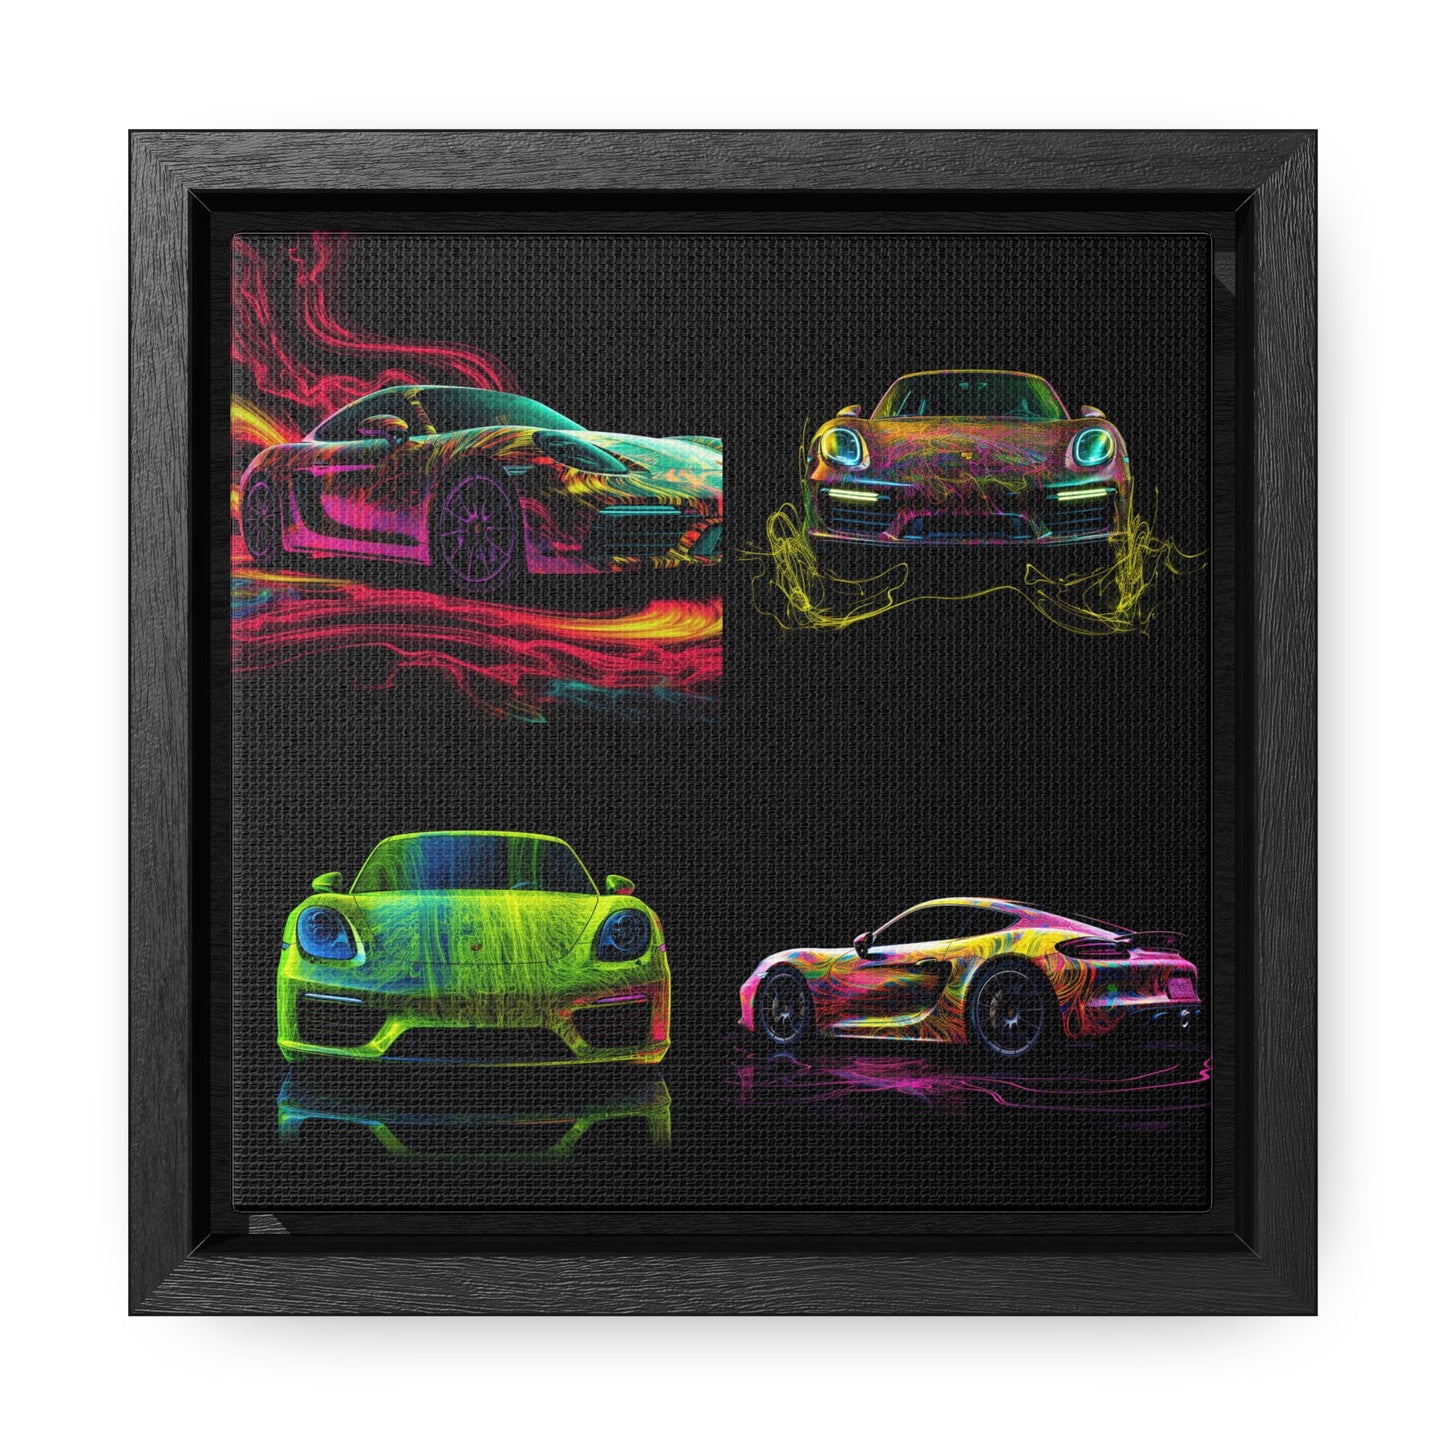 Gallery Canvas Wraps, Square Frame Porsche Flair 5